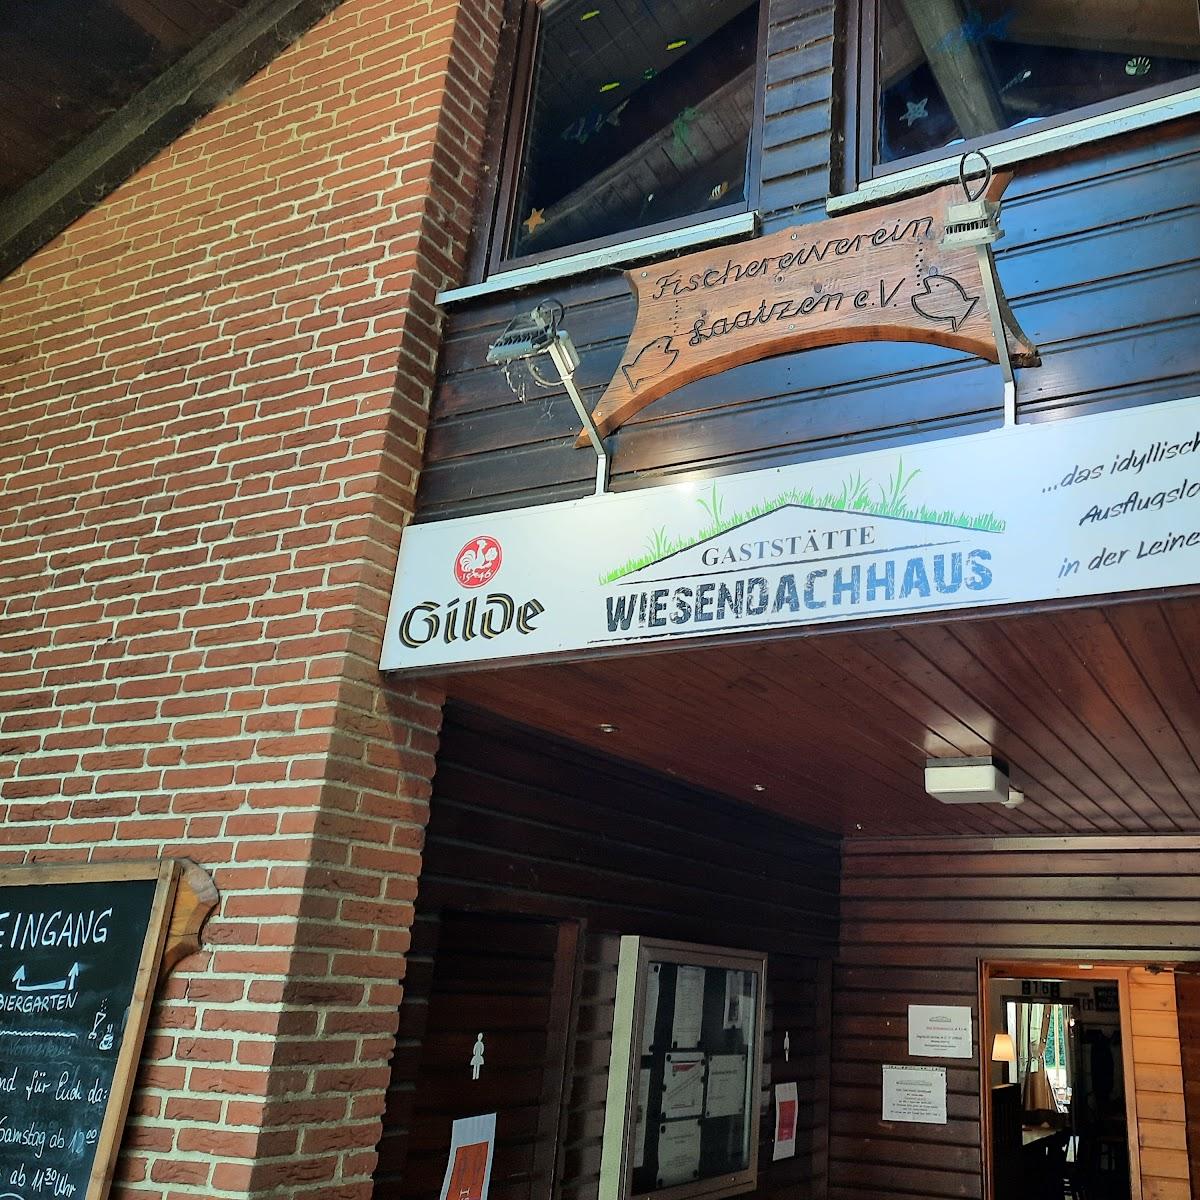 Restaurant "Wiesendachhaus" in Laatzen